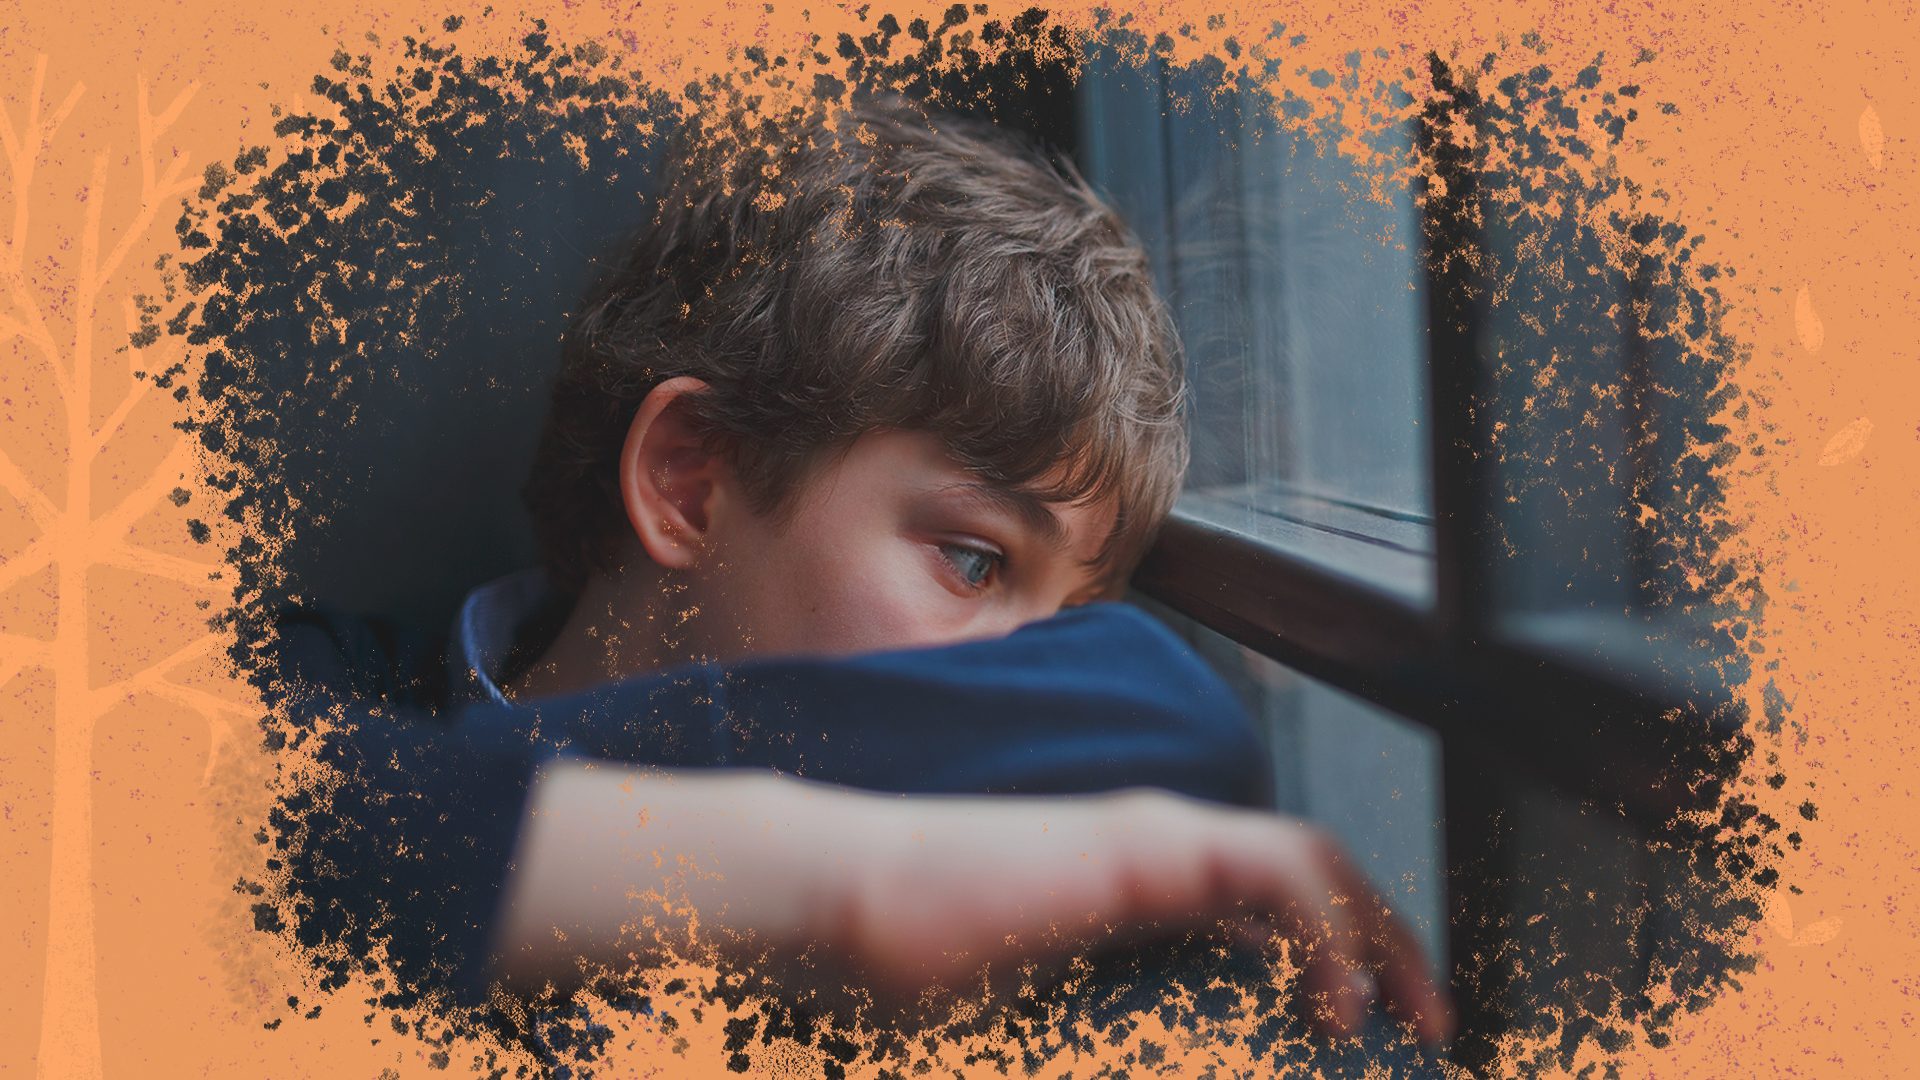 Um menino, de pele branca, está olhando pela janela, com semblante aparentemente preocupado e triste